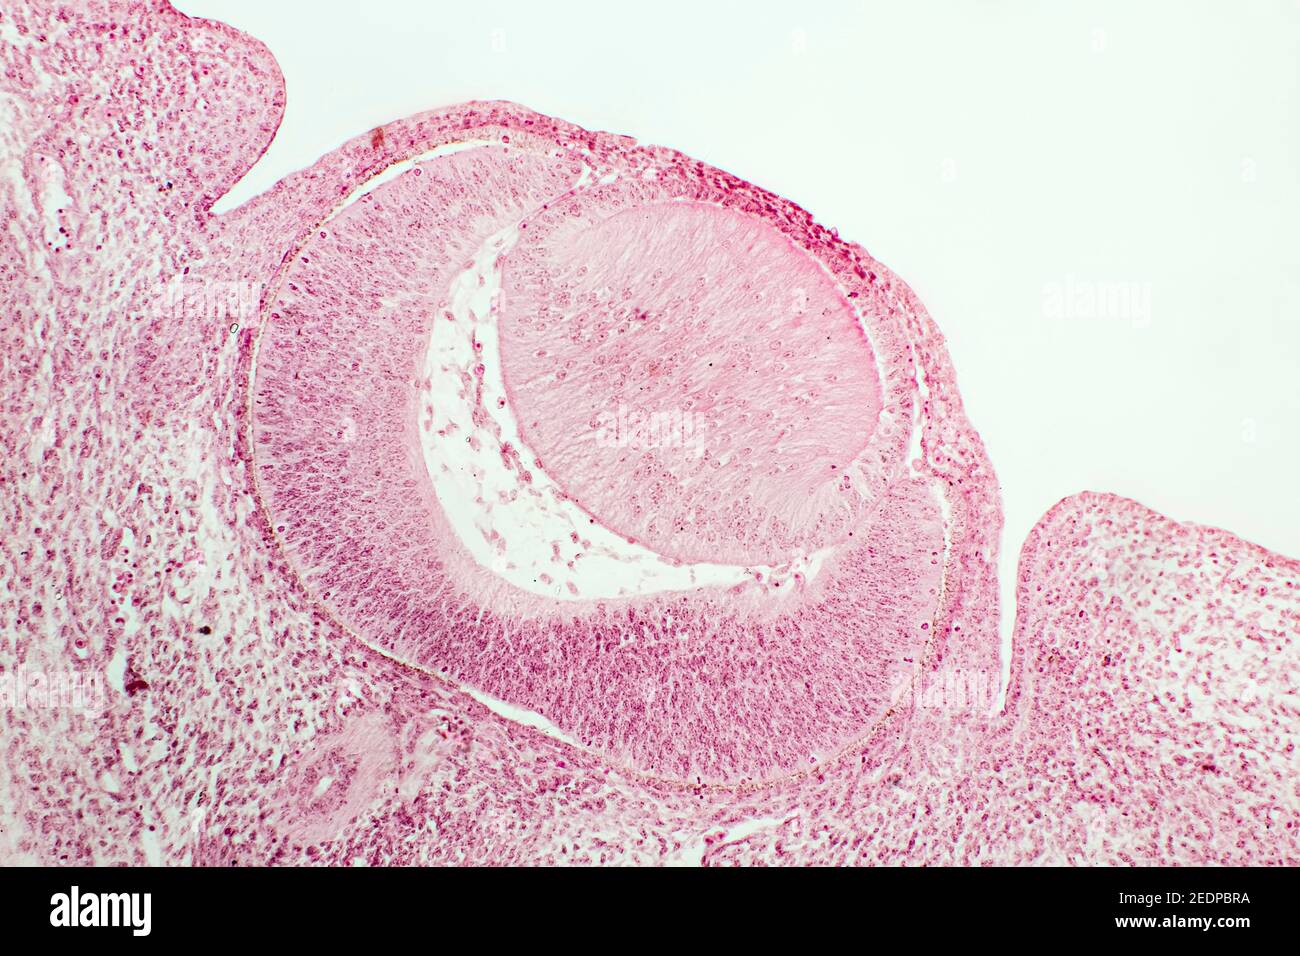 Querschnitt eines Kopfes eines kleinen Säugetiers, Embryo mit ersten Entwicklungsstadien der Augen, x 18 Stockfoto